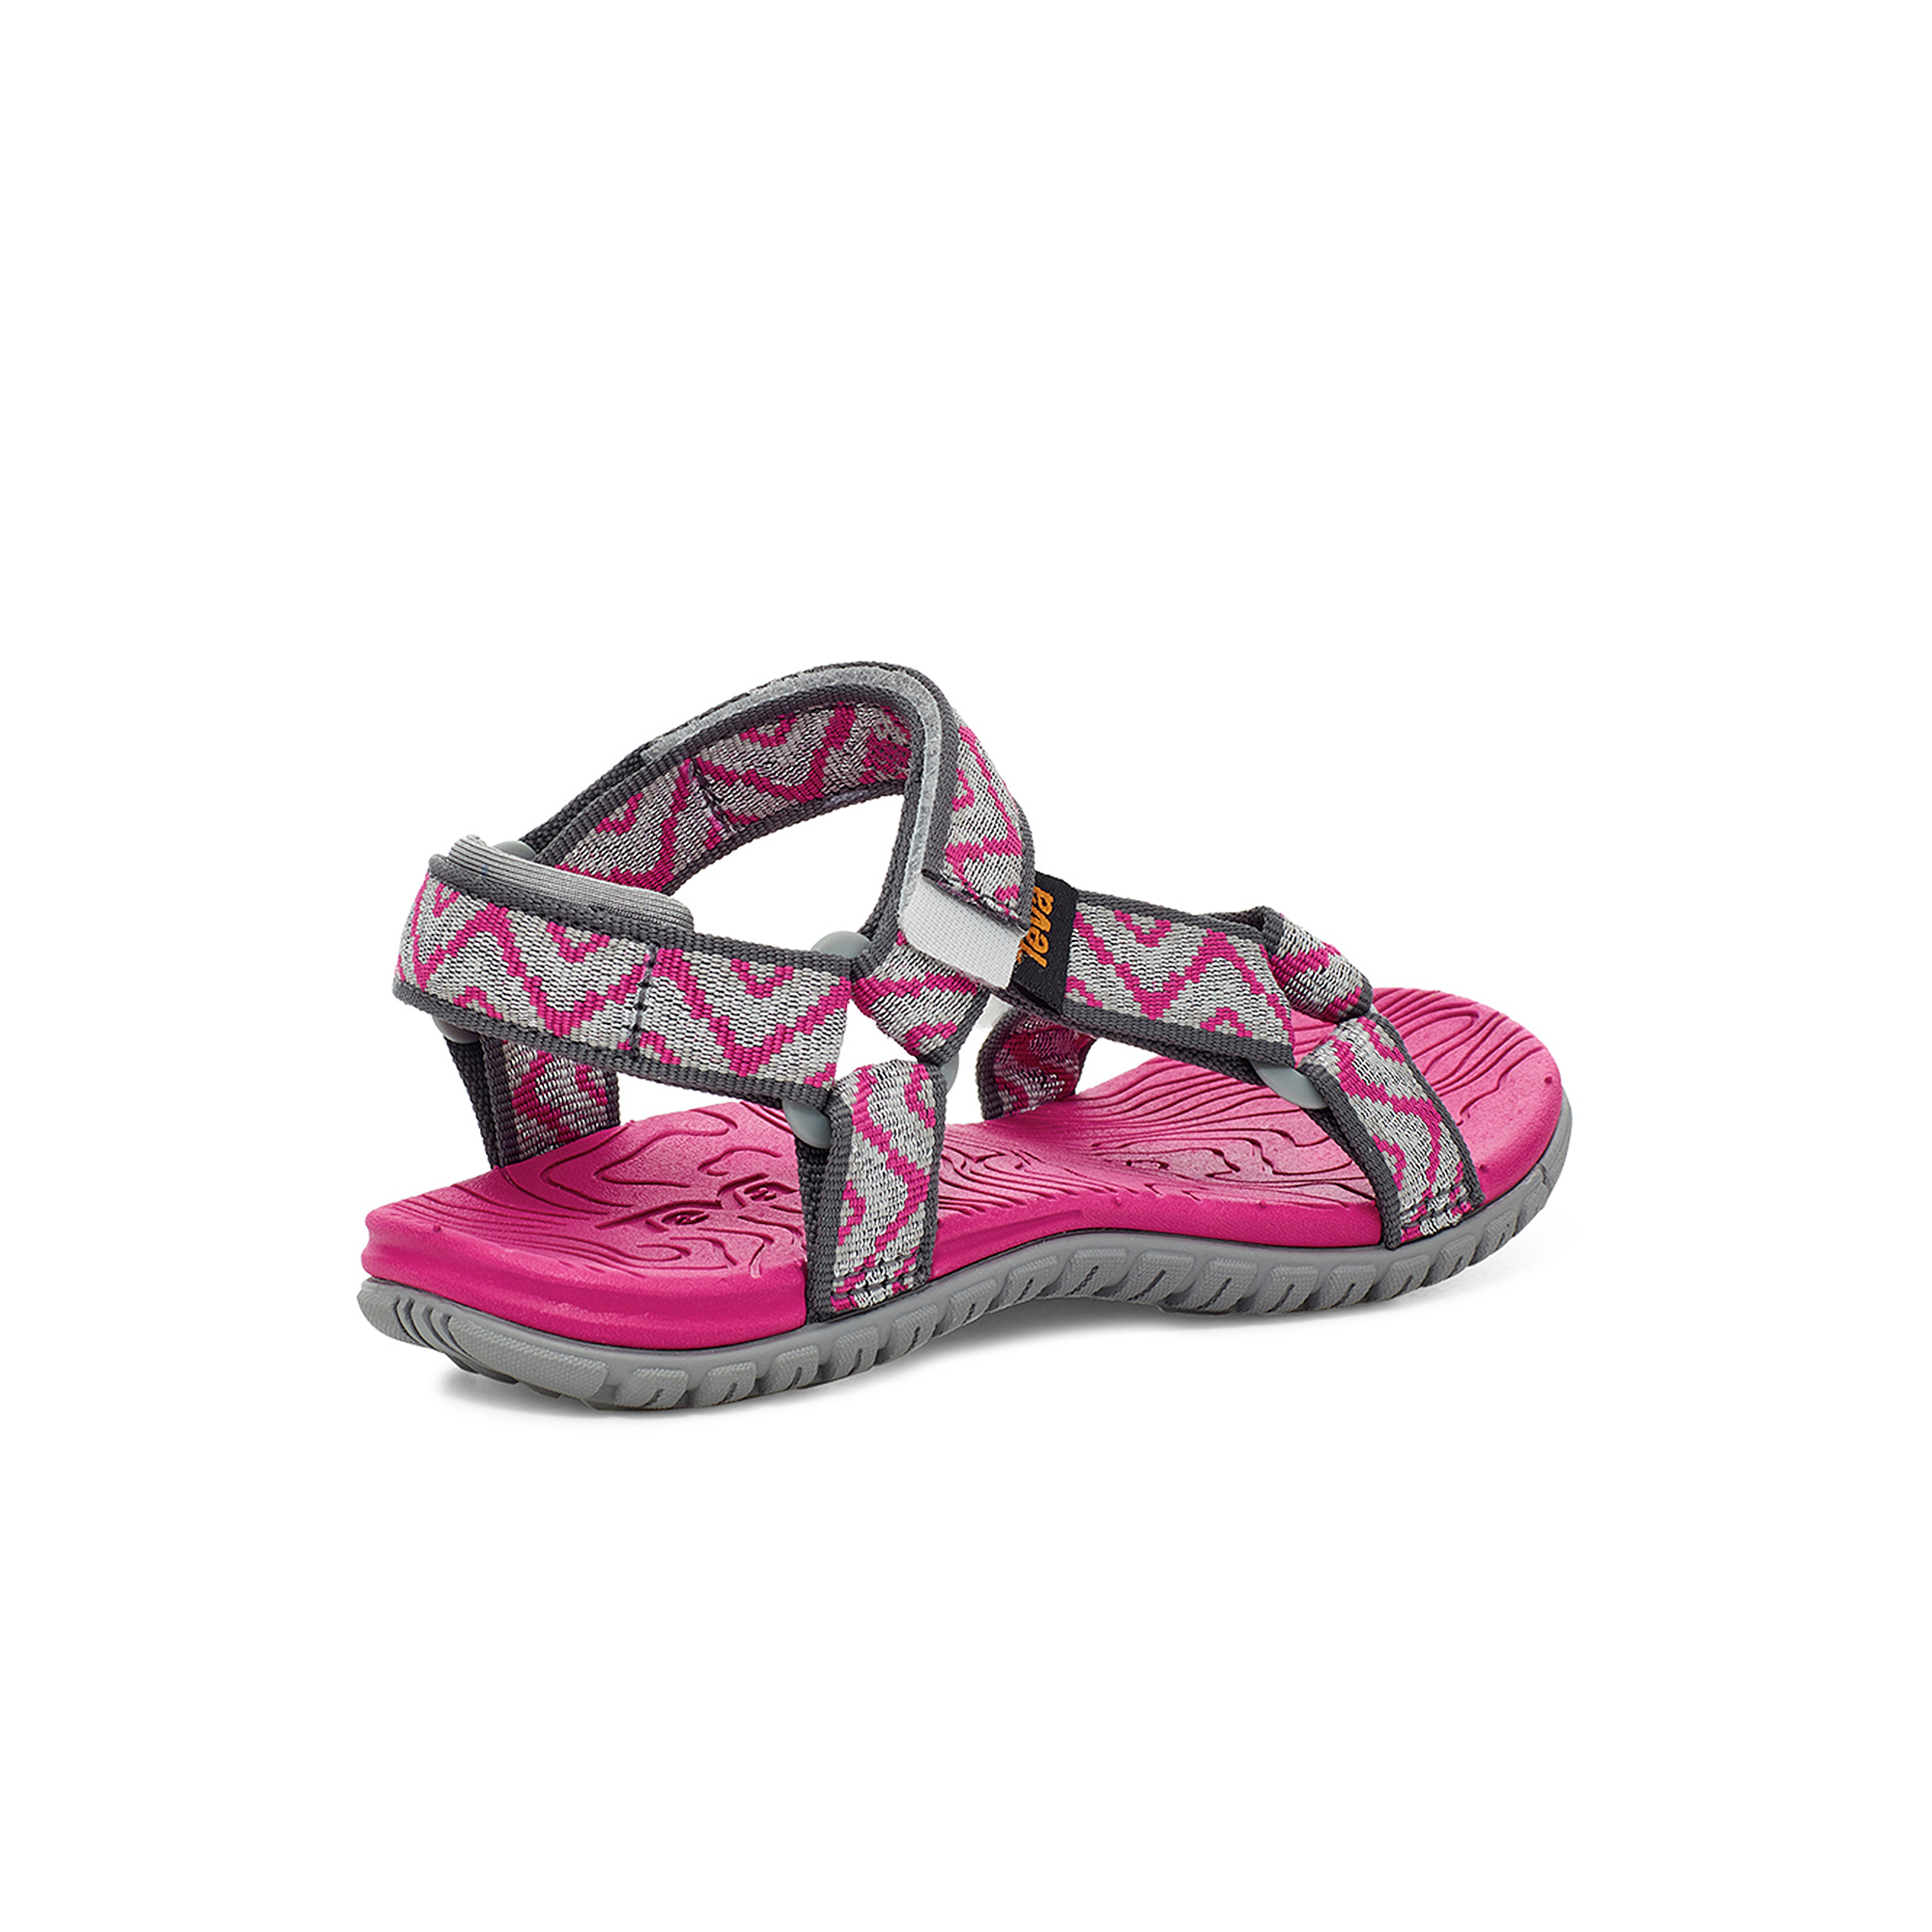 Giày sandal trẻ em Teva Hurricane 3 - 1019535C